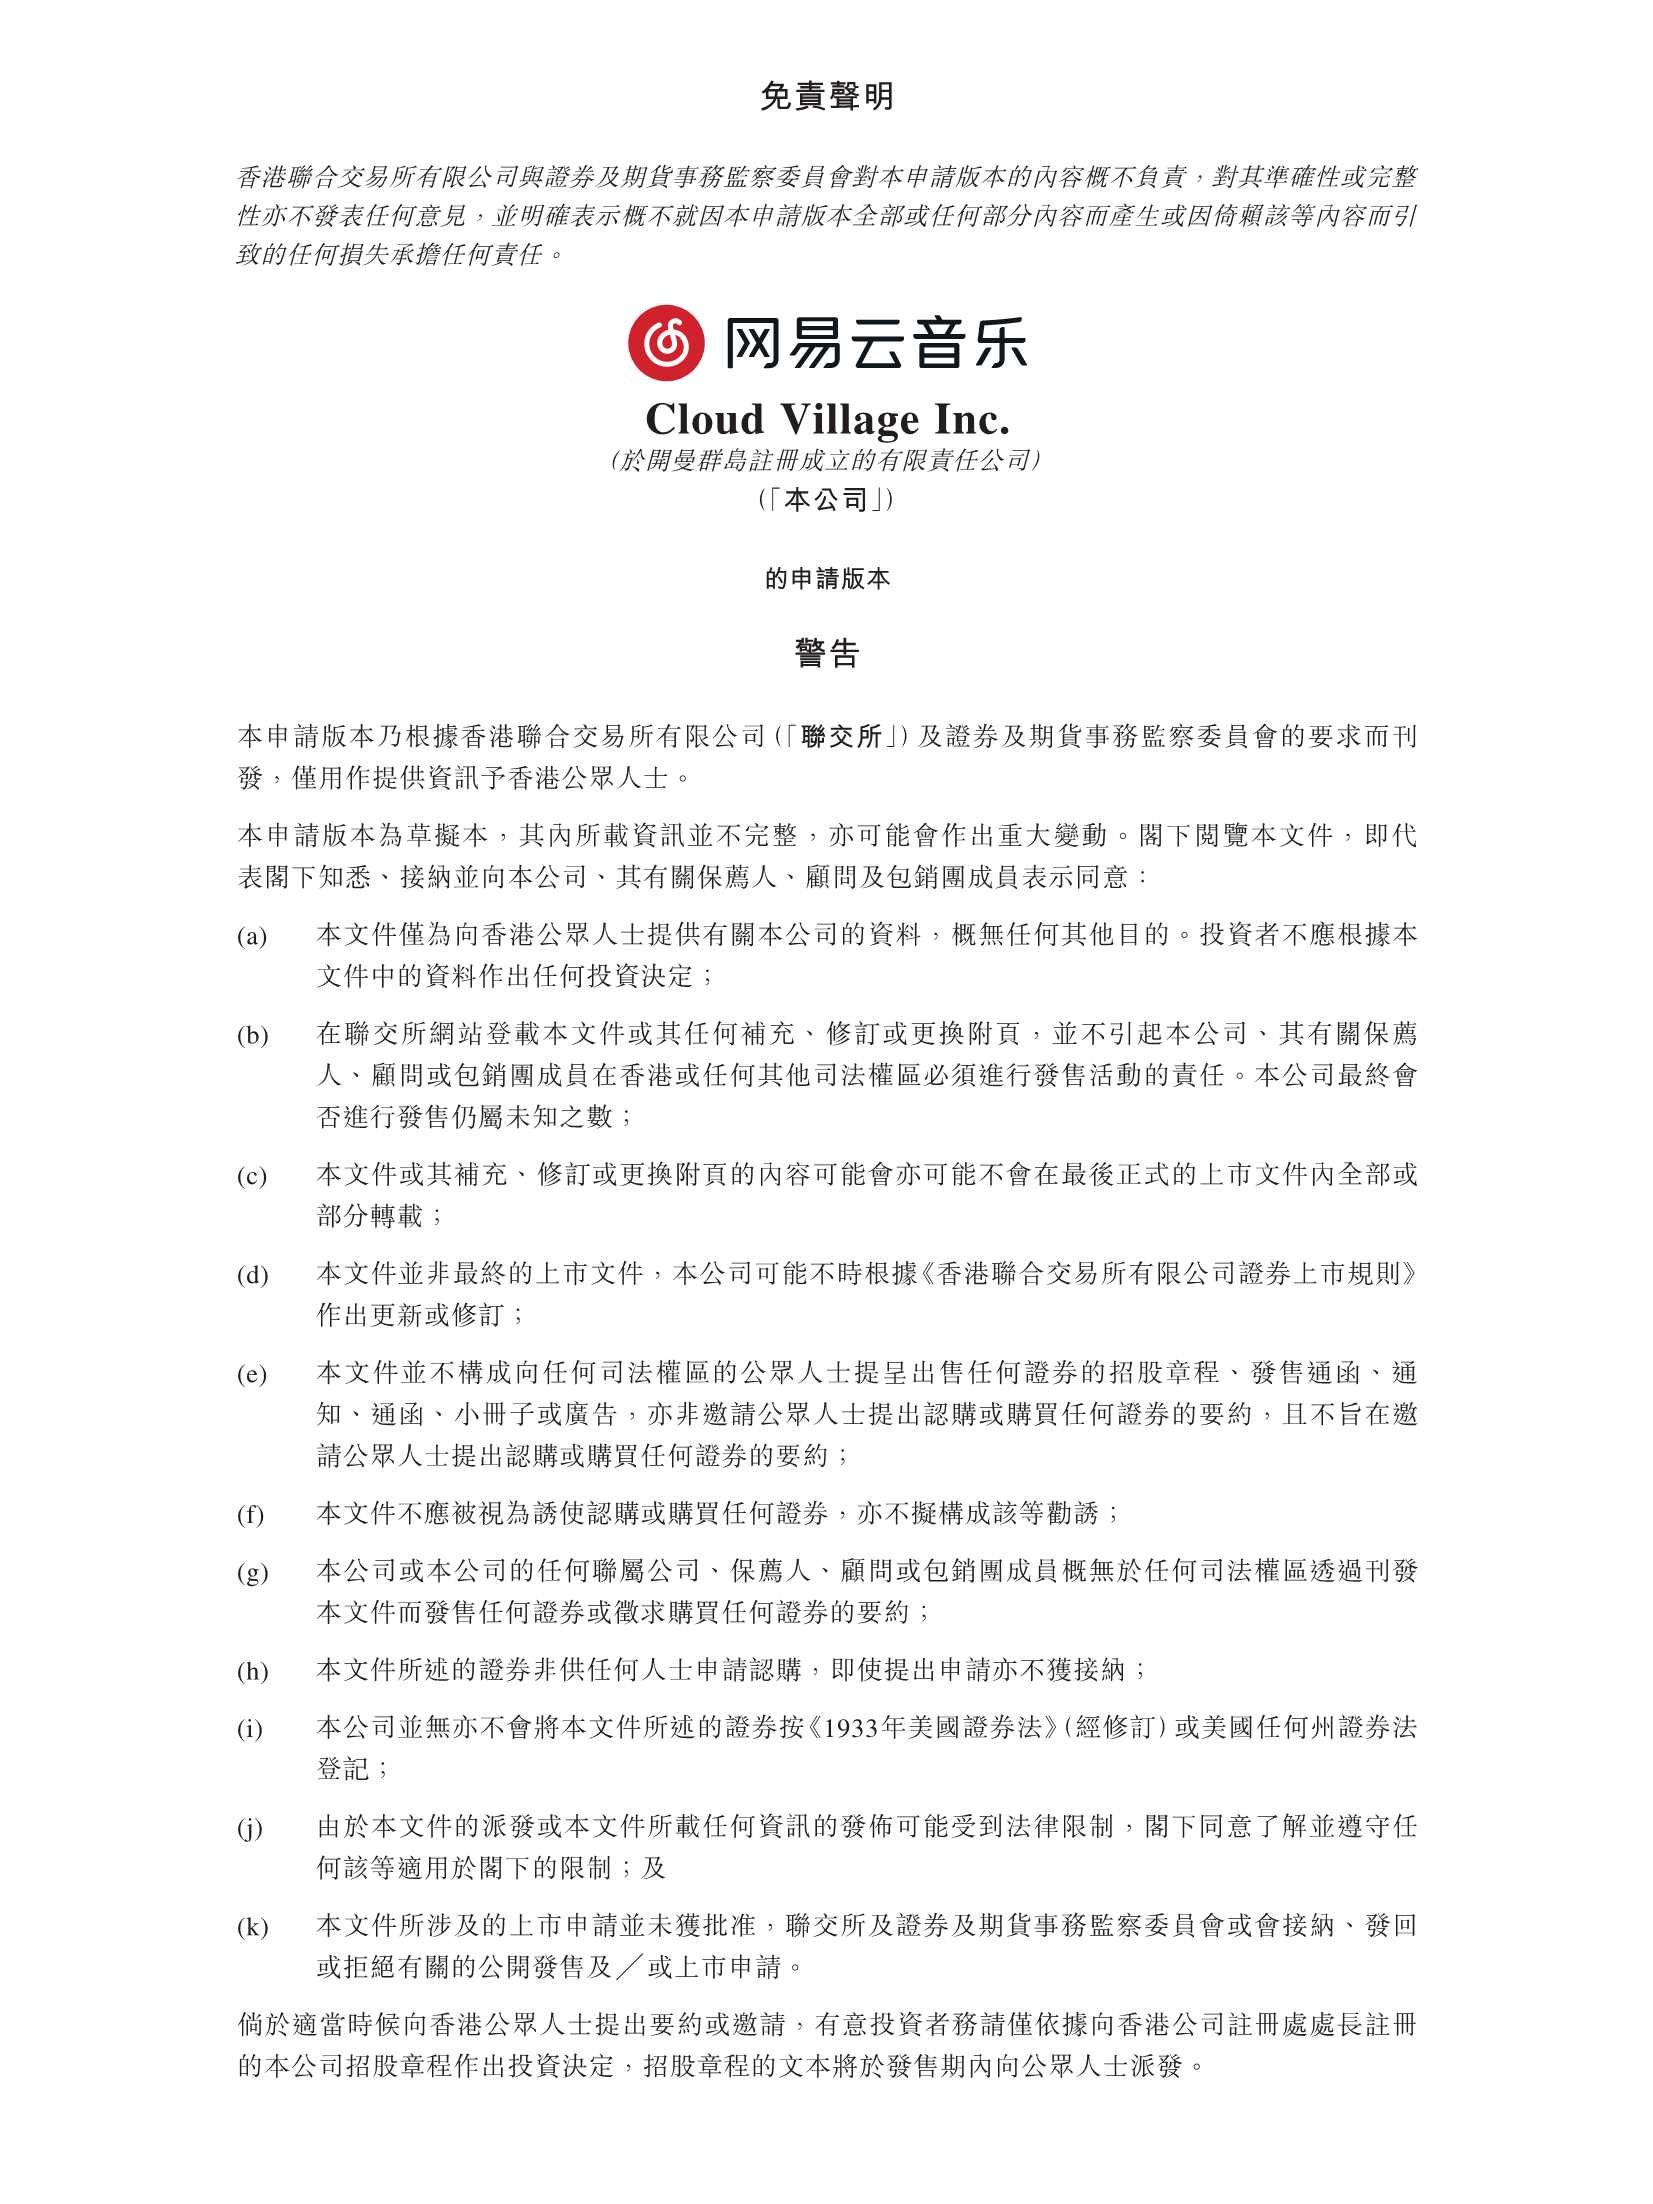 网易云音乐-网易云音乐上市IPO招股书-2021.05-429页